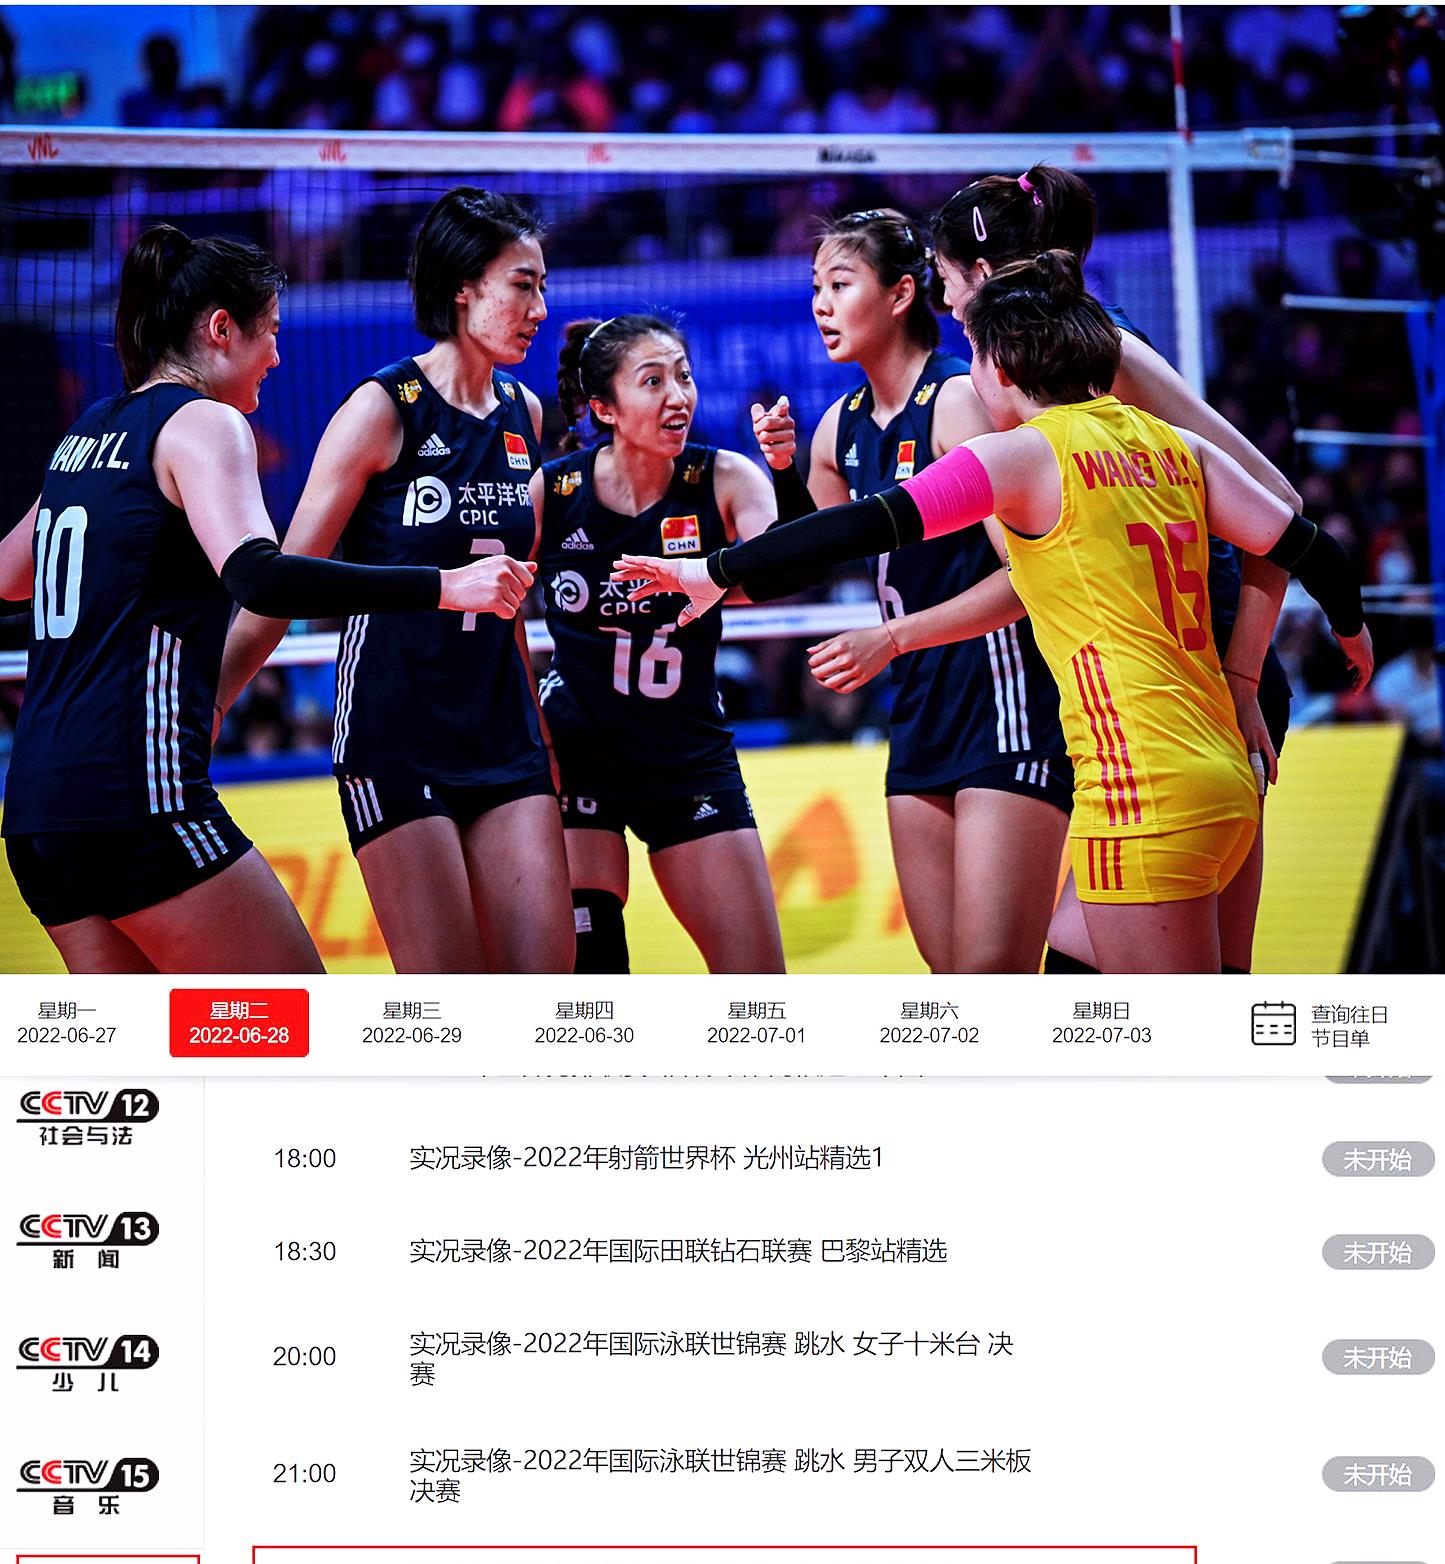 原创中央电视台cctv5直播了中国女排连续两次击败巴西队的比赛看女孩